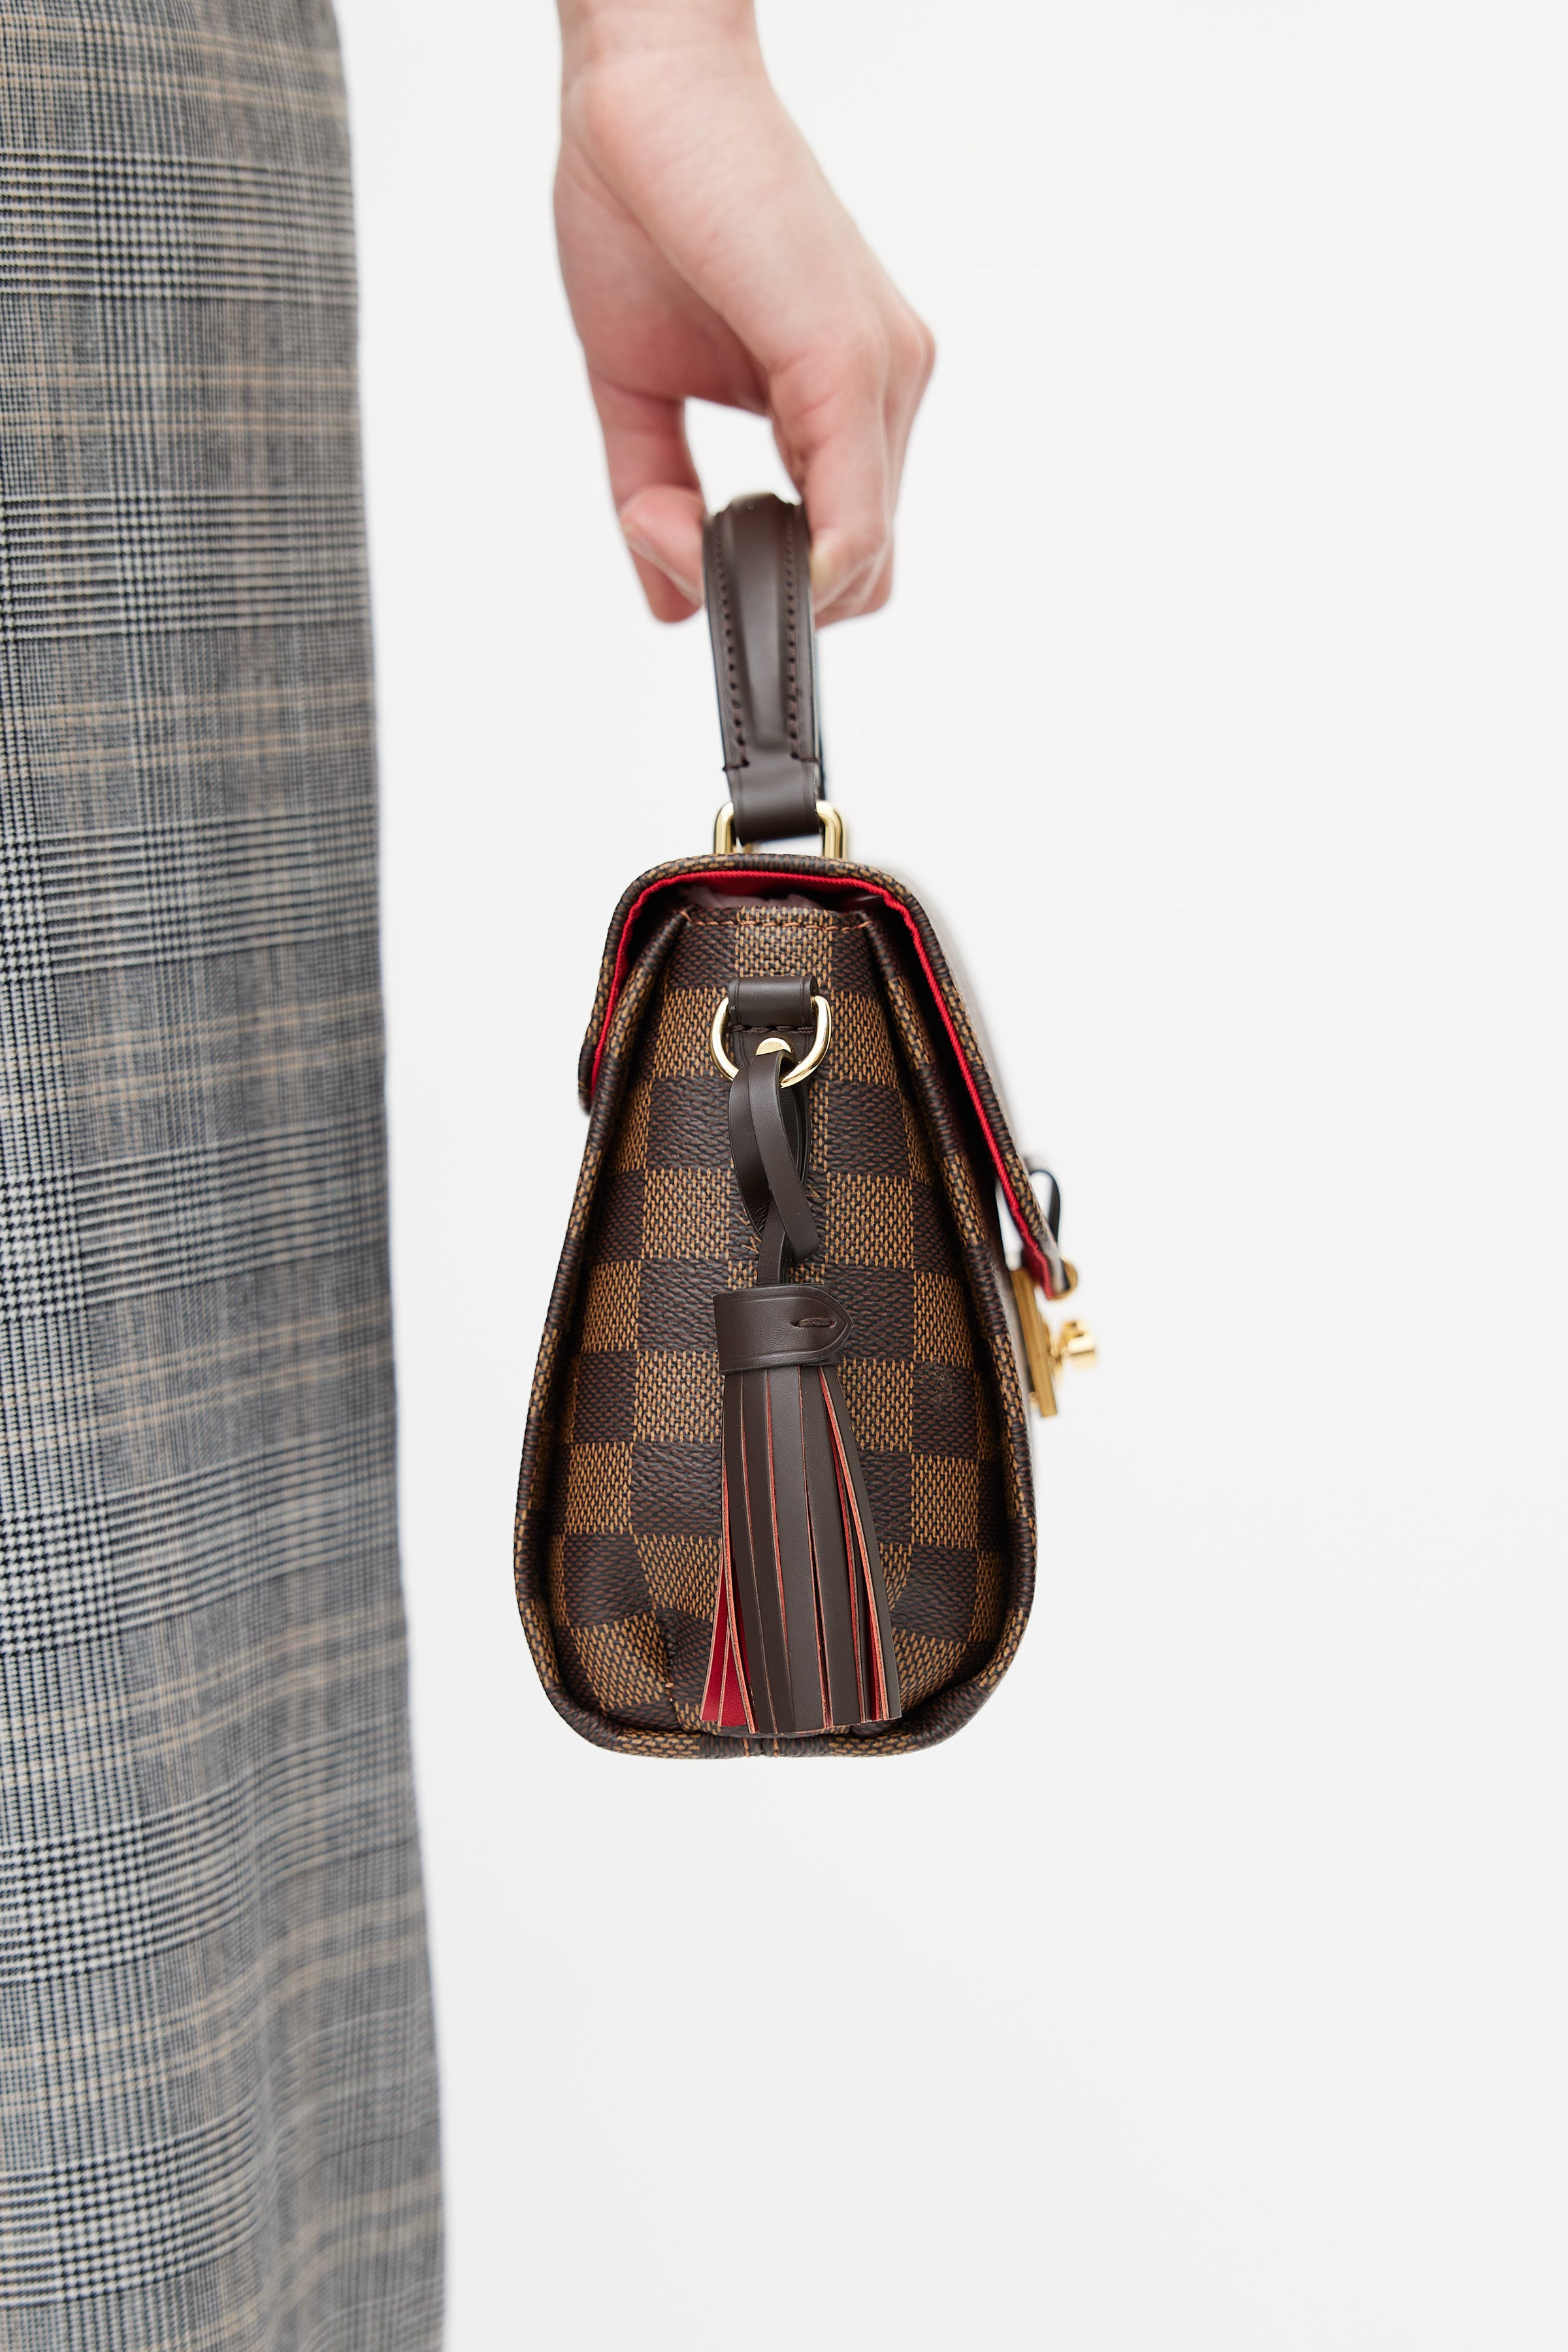 Louis Vuitton Croisette Shoulder bag 380716